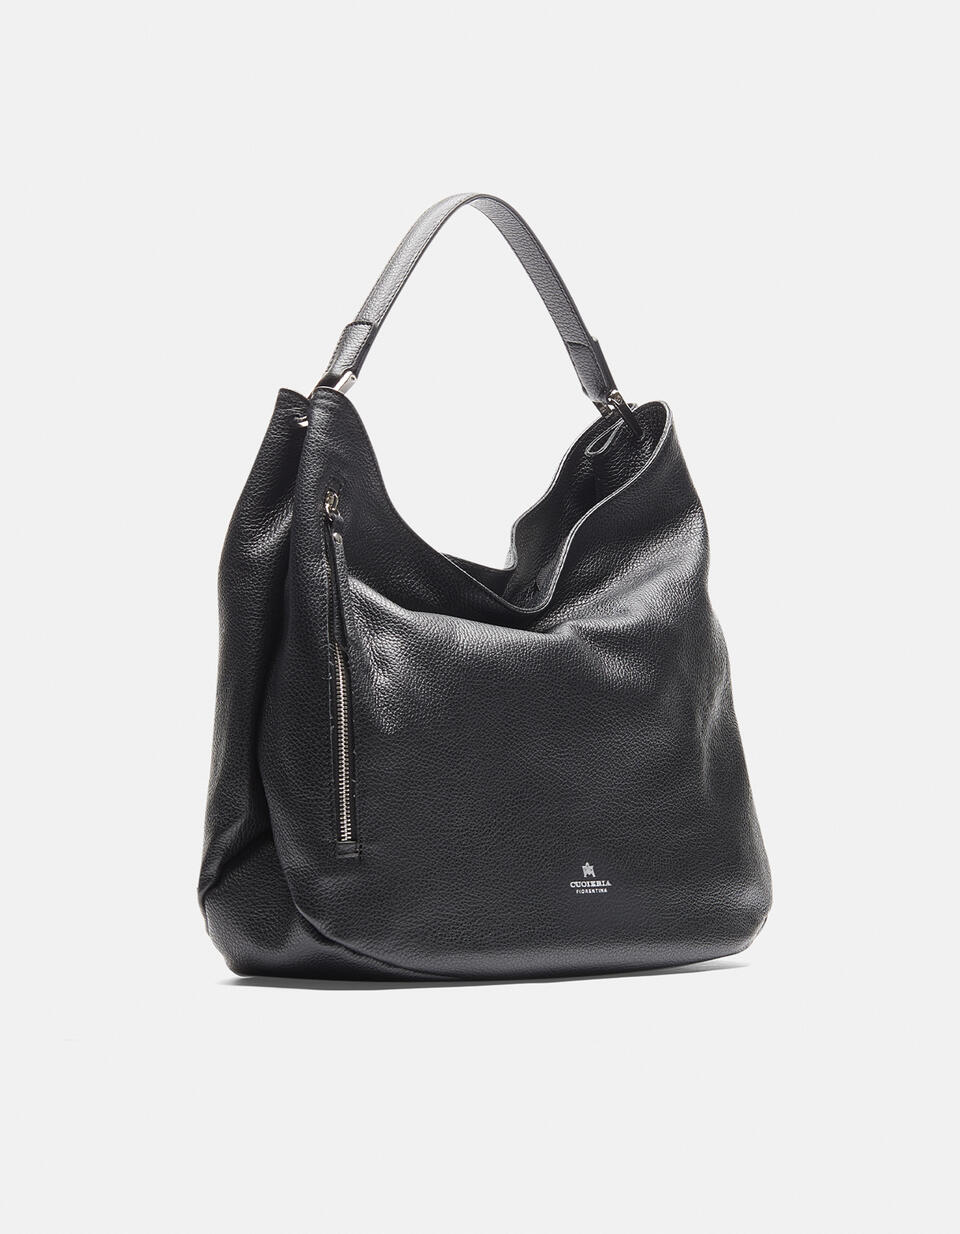 Shoulder shopping - SHOPPING - WOMEN'S BAGS | bags NERO - SHOPPING - WOMEN'S BAGS | bagsCuoieria Fiorentina